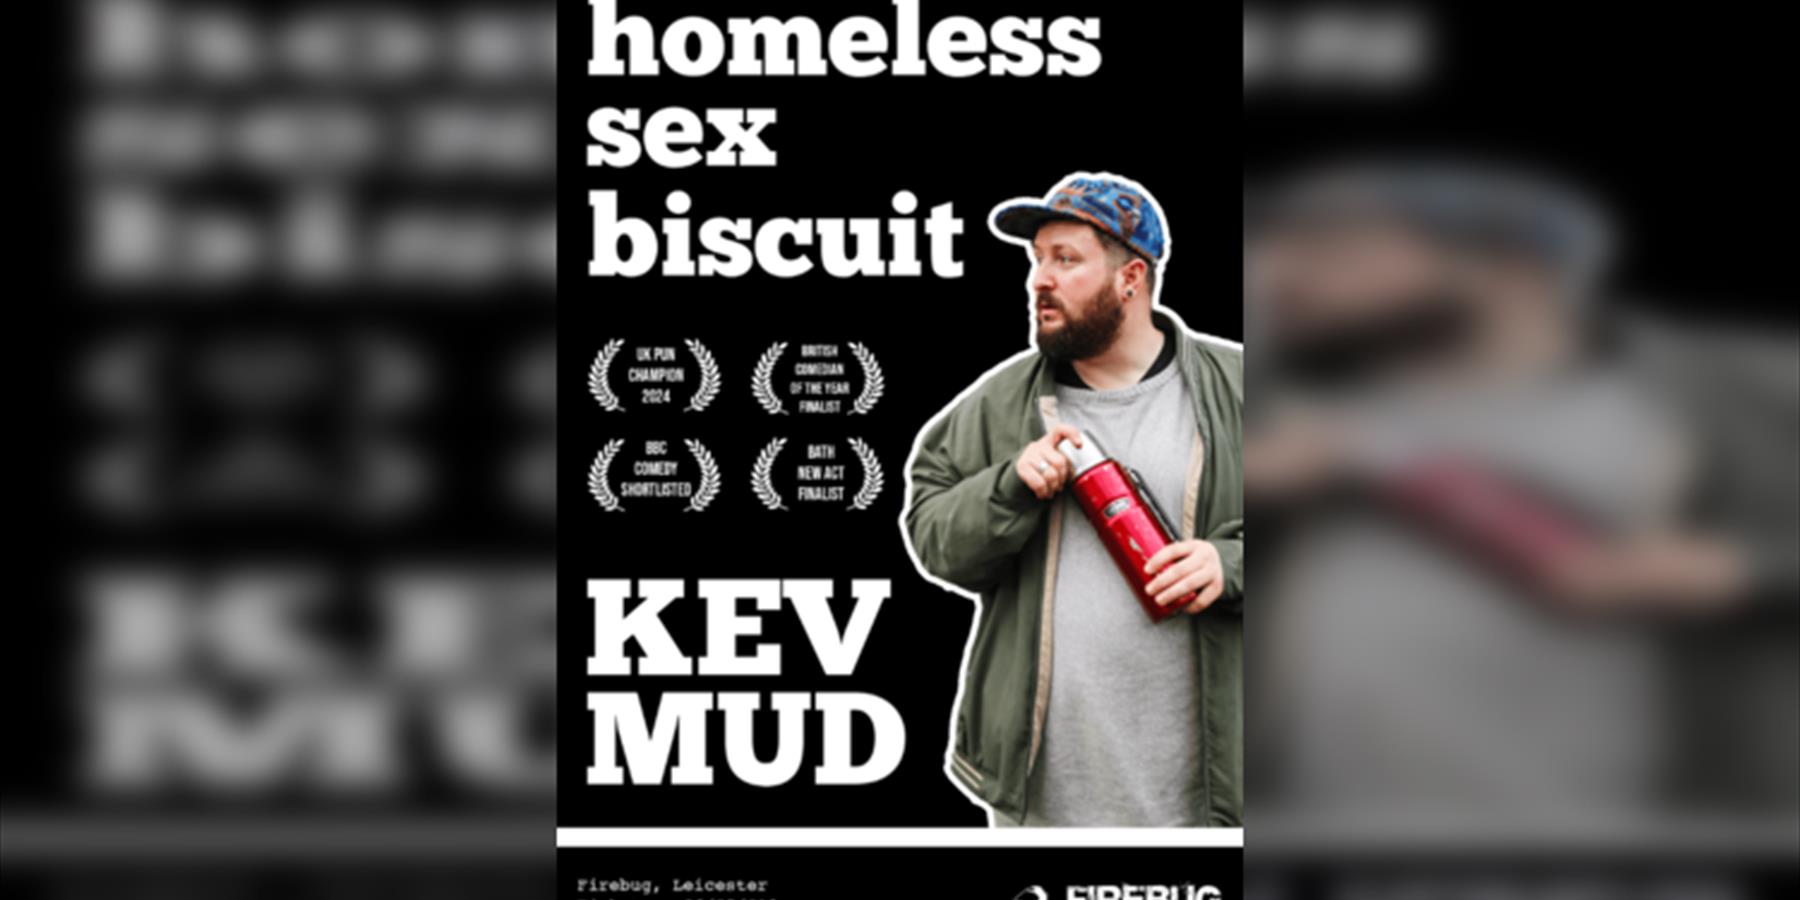 Kev Mud: Homeless Sex Biscuit